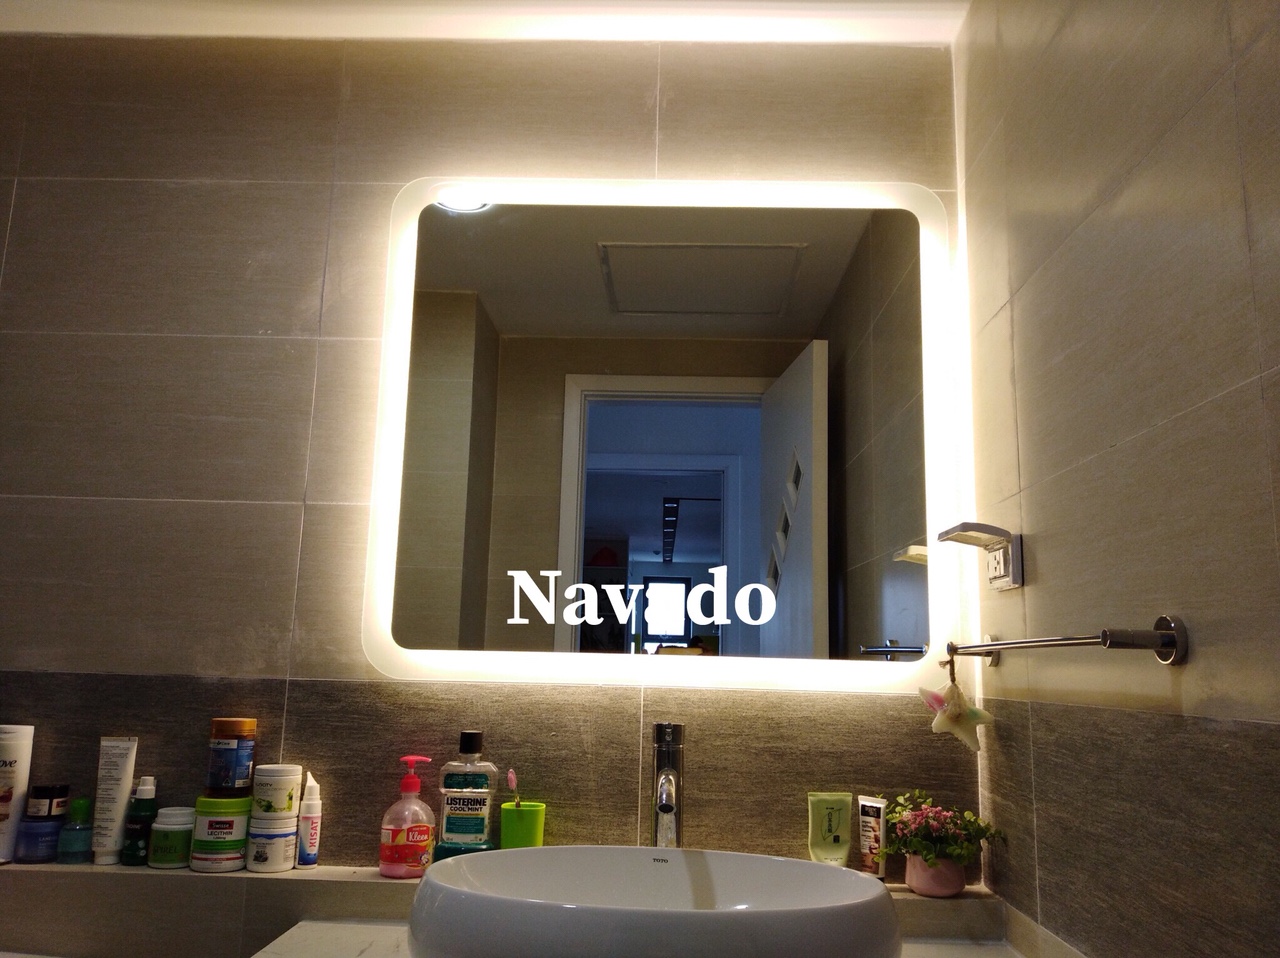 Gương phòng tắm đèn led cao cấp navado: Trang trí phòng tắm của bạn với gương phòng tắm đèn LED cao cấp Navado để mang đến cho bạn không gian phòng tắm sang trọng và tinh tế. Với công nghệ LED tiên tiến và thiết kế hiện đại, gương đèn LED Navado của chúng tôi sẽ dễ dàng hòa quyện vào bất cứ không gian nội thất nào. Đặc biệt, gương đèn LED Navado còn giúp tiết kiệm năng lượng và có độ bền cao, đảm bảo cho bạn sử dụng trong thời gian dài mà không phải lo lắng về việc thay thế sửa chữa.